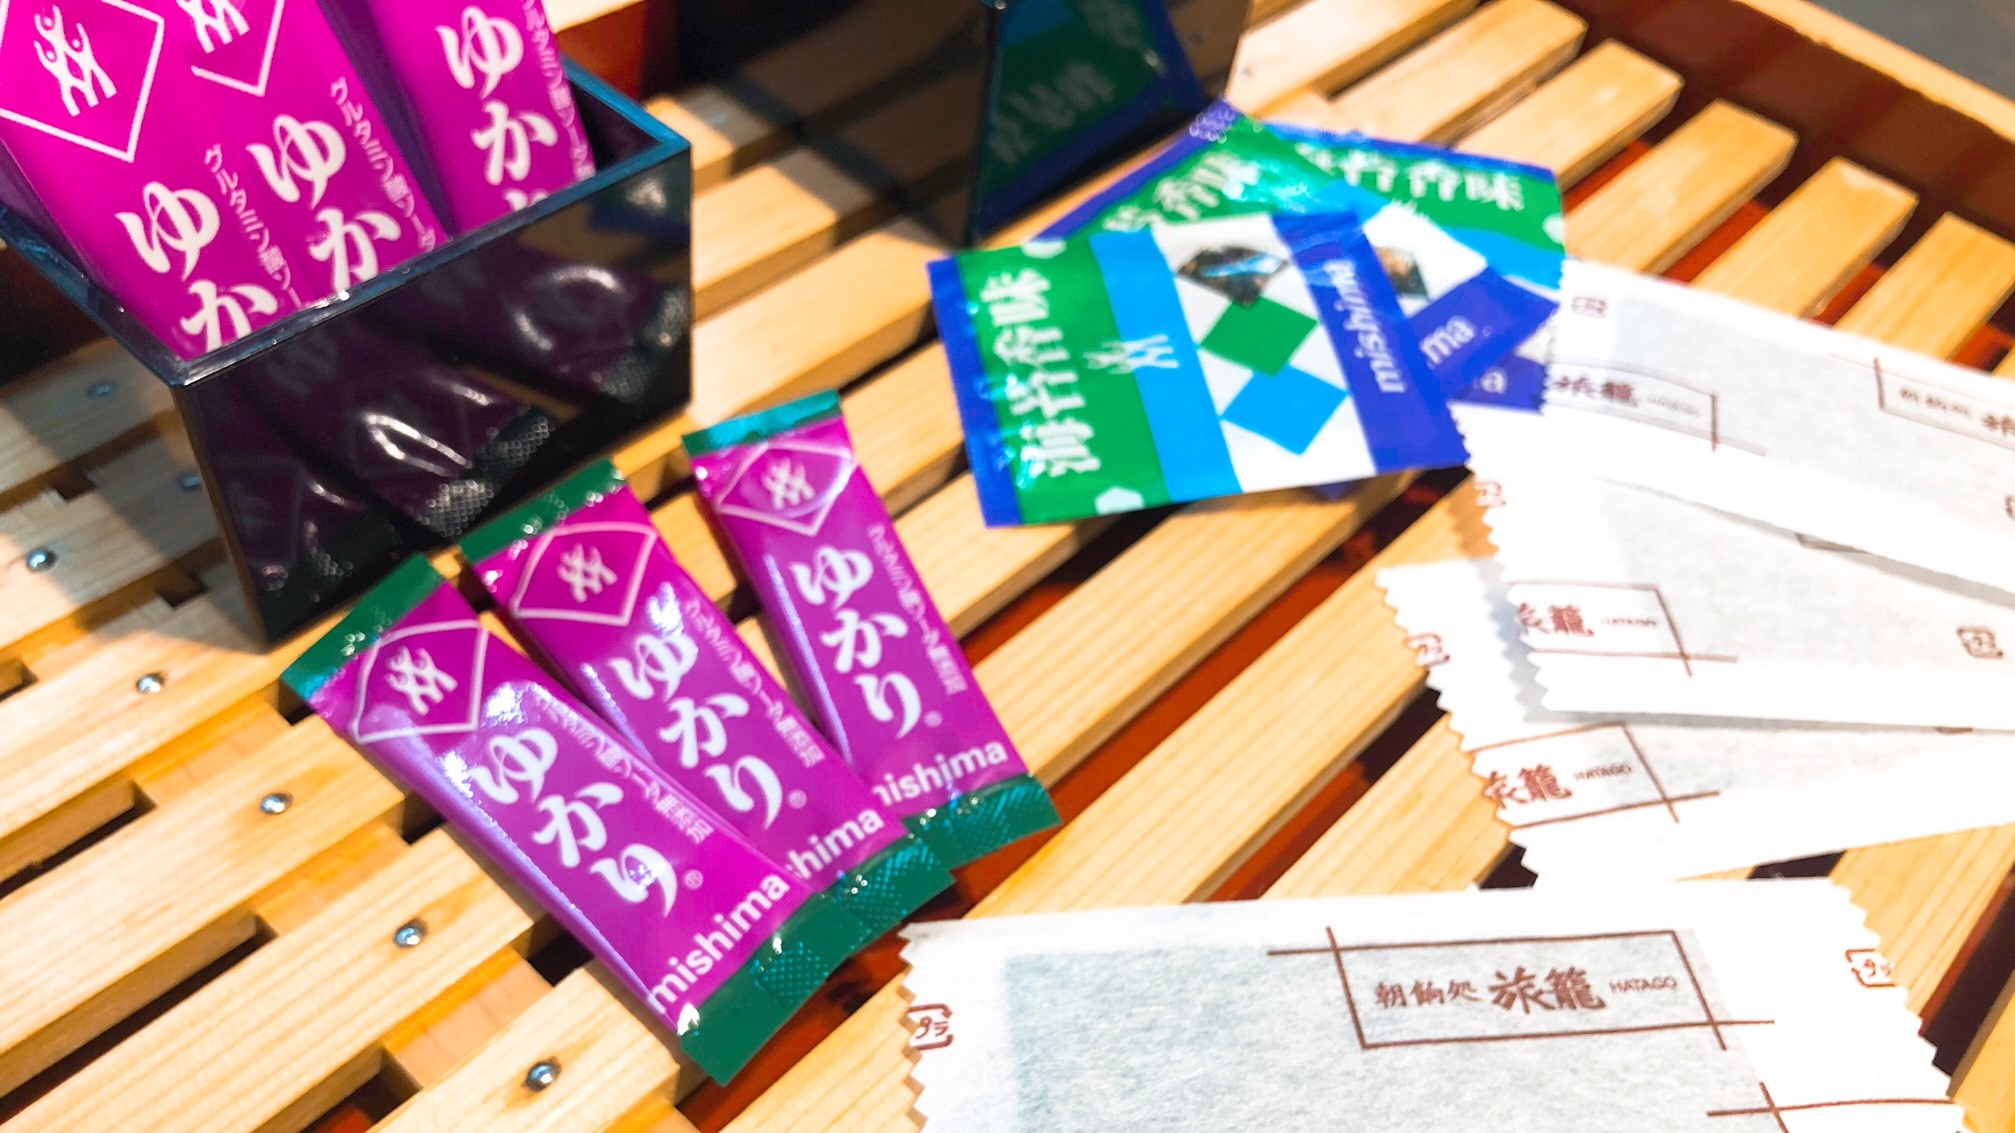 ◆のり・ふりかけ 「ゆかり」は広島市の三島食品の製品です。